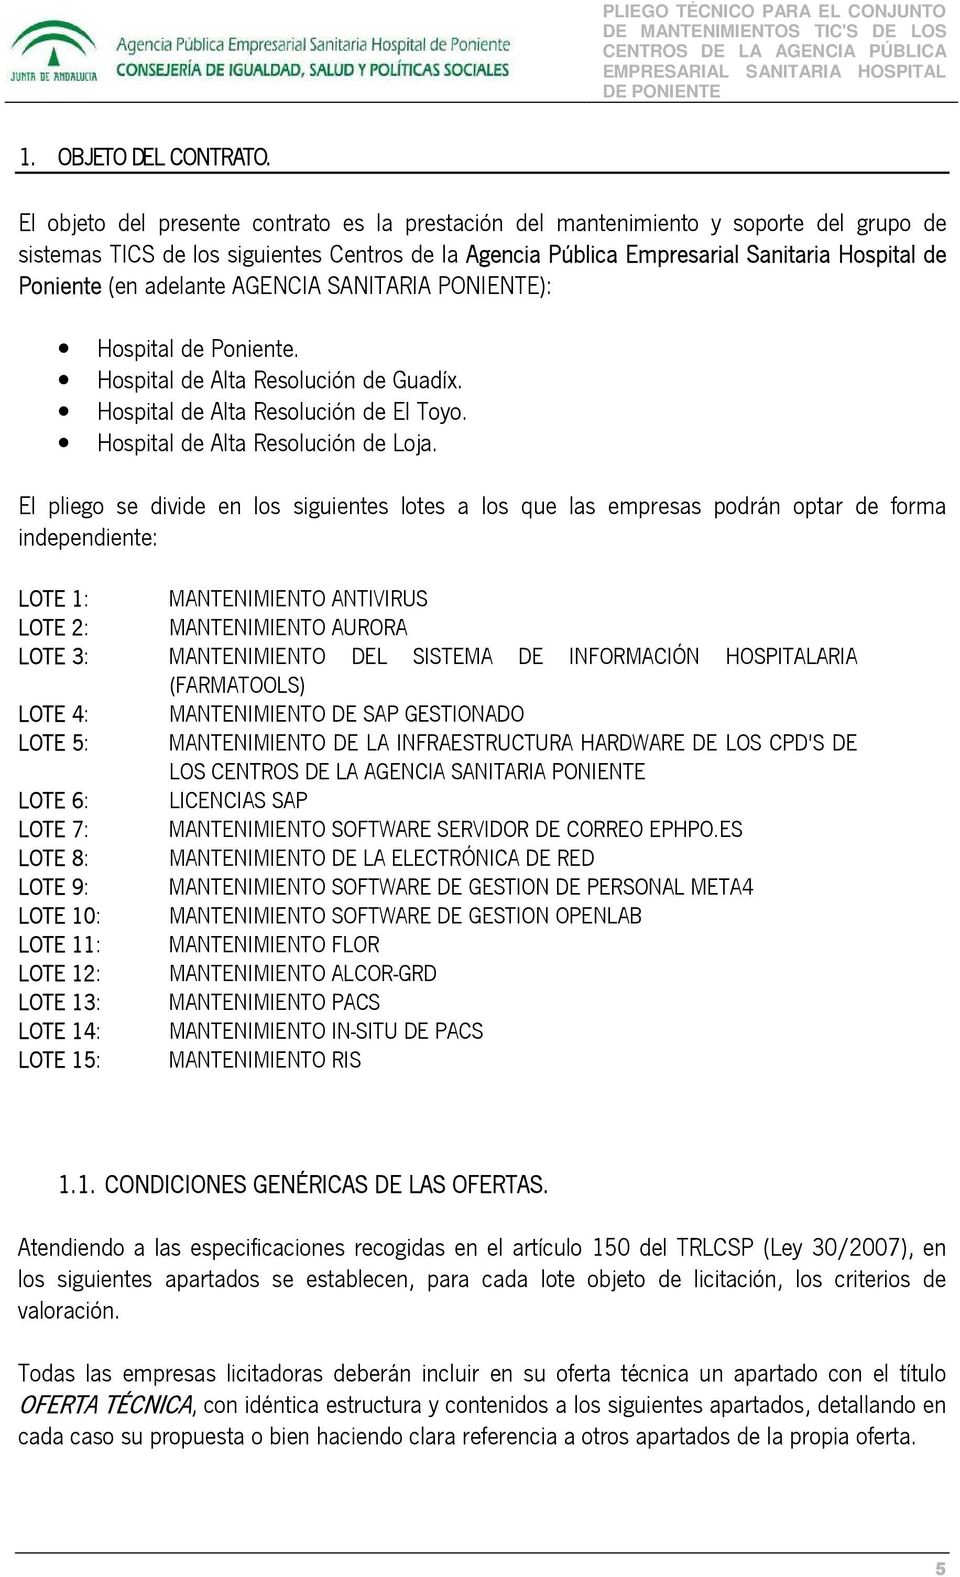 adelante AGENCIA SANITARIA PONIENTE): Hospital de Poniente. Hospital de Alta Resolución de Guadíx. Hospital de Alta Resolución de El Toyo. Hospital de Alta Resolución de Loja.